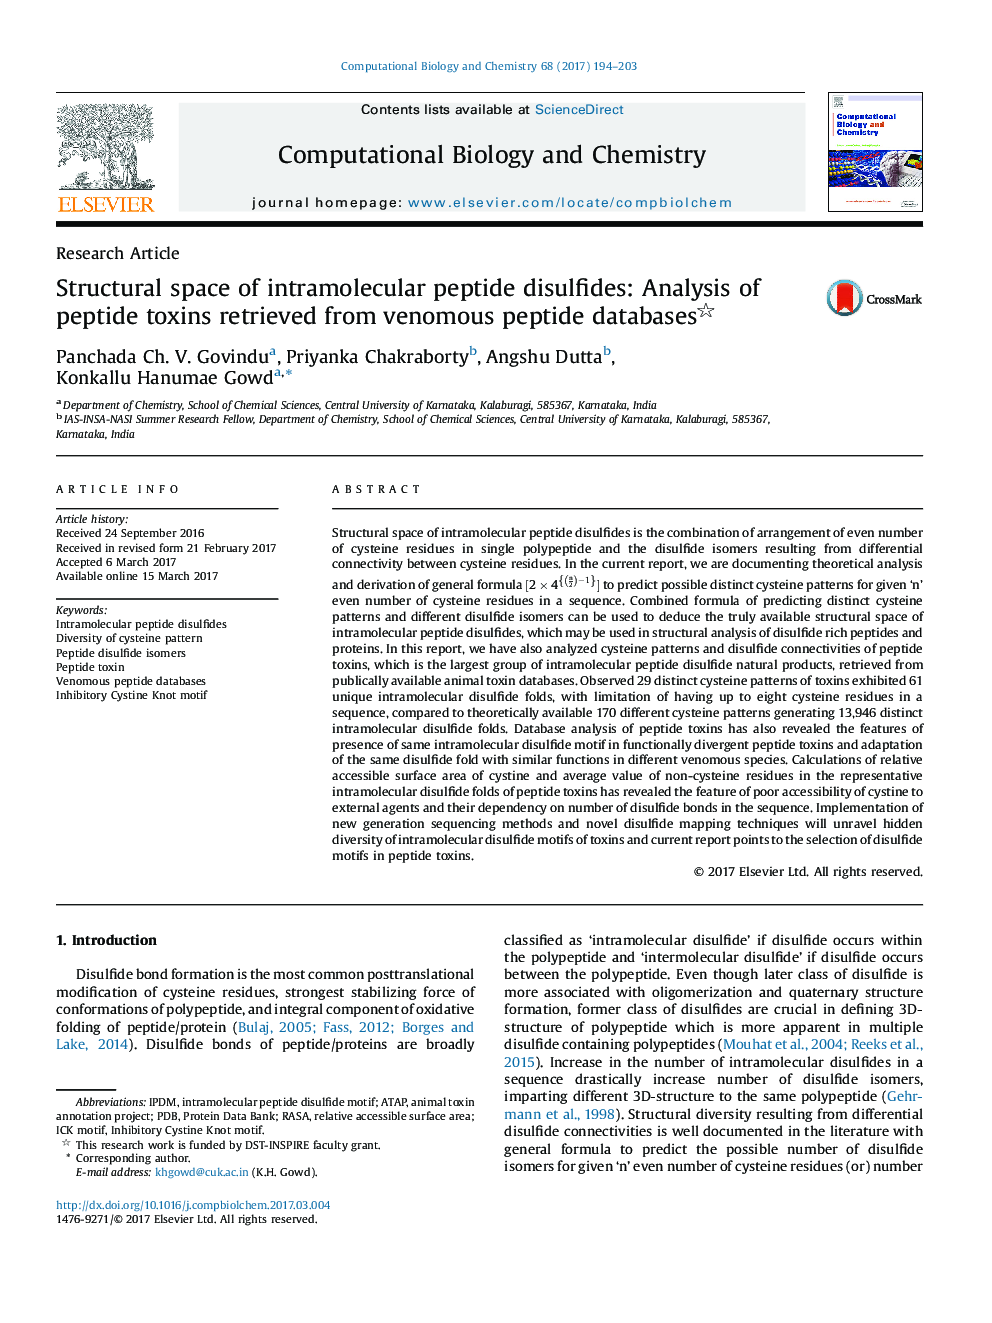 تحقیقات مقاله فضای ساختاری دیسولفید پپتید داخل مولکولی: تجزیه و تحلیل سموم پپتیدی که از پایگاه داده های پپتید سمی بازیابی شده است